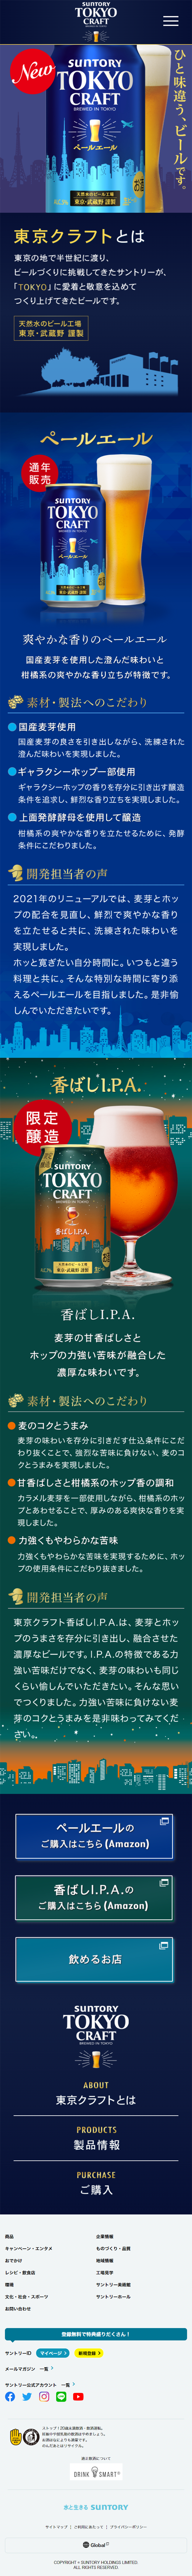 東京クラフトビール_sp_1